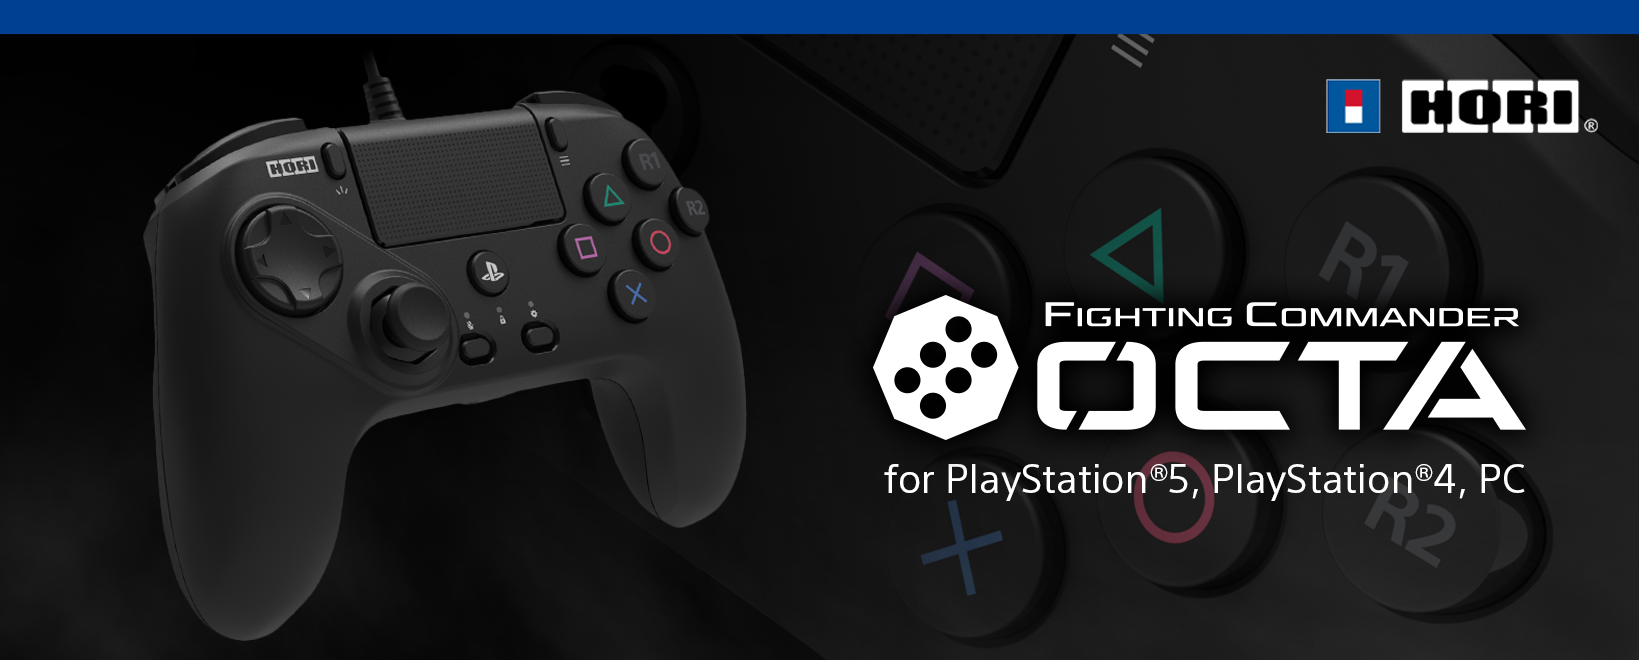 株式会社 HORI | ファイティングコマンダー OCTA for PlayStation®5 ...